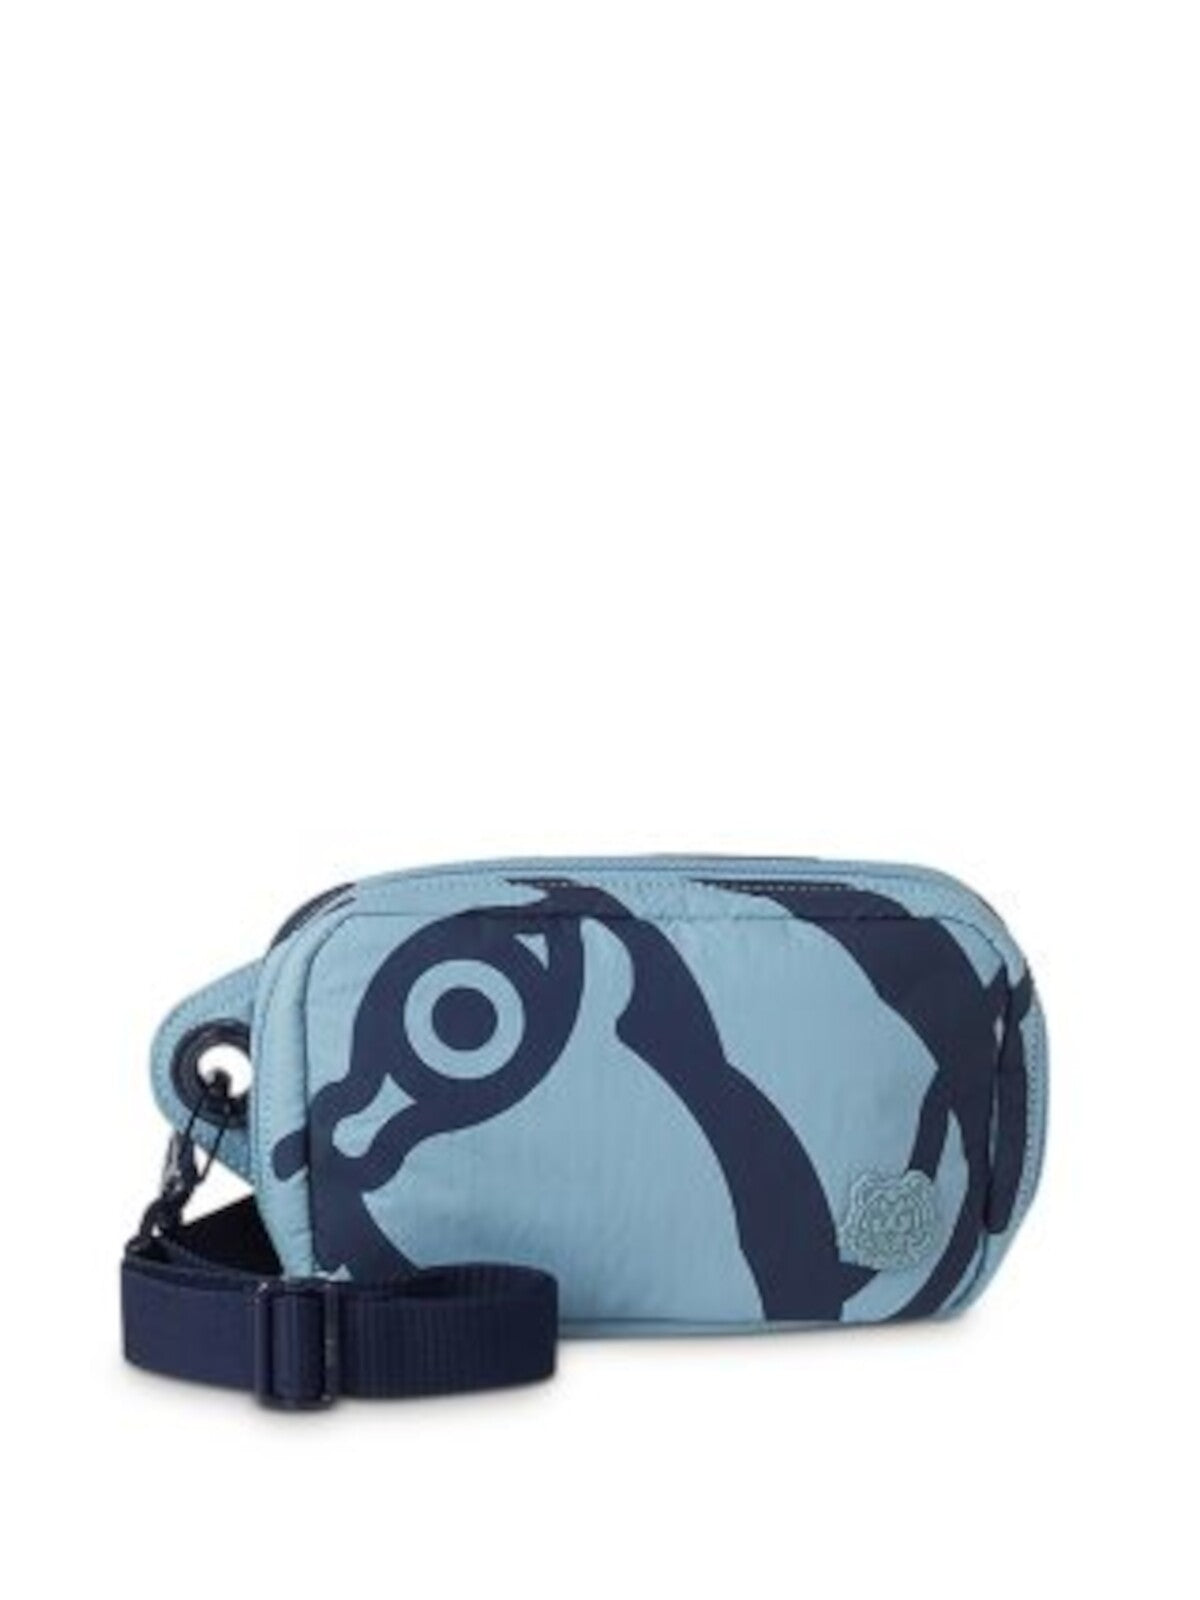 KENZO Women's Blue Tiger Lined Card Slots, Logo Graphic Adjustable Strap Belt Bag Purse